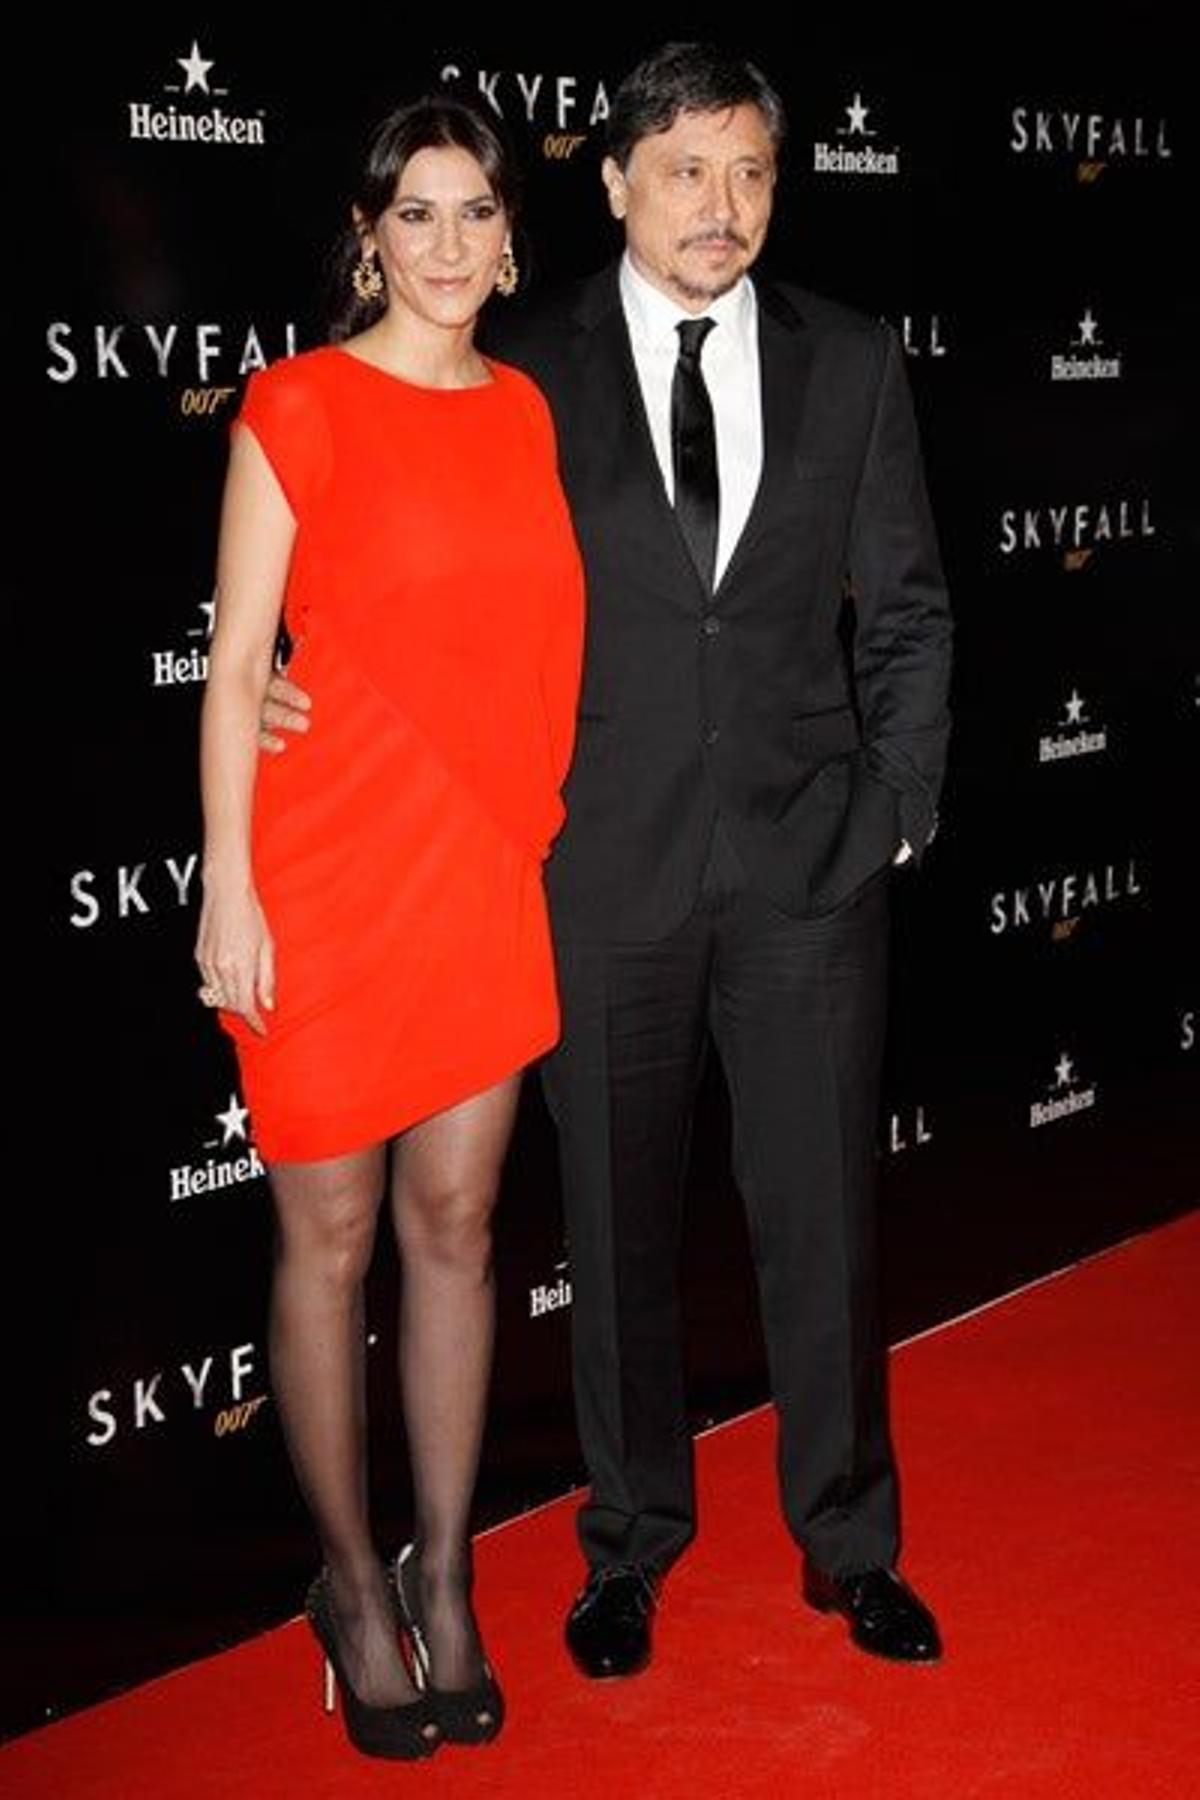 La alfombra roja del estreno de 'Skyfall' en Madrid